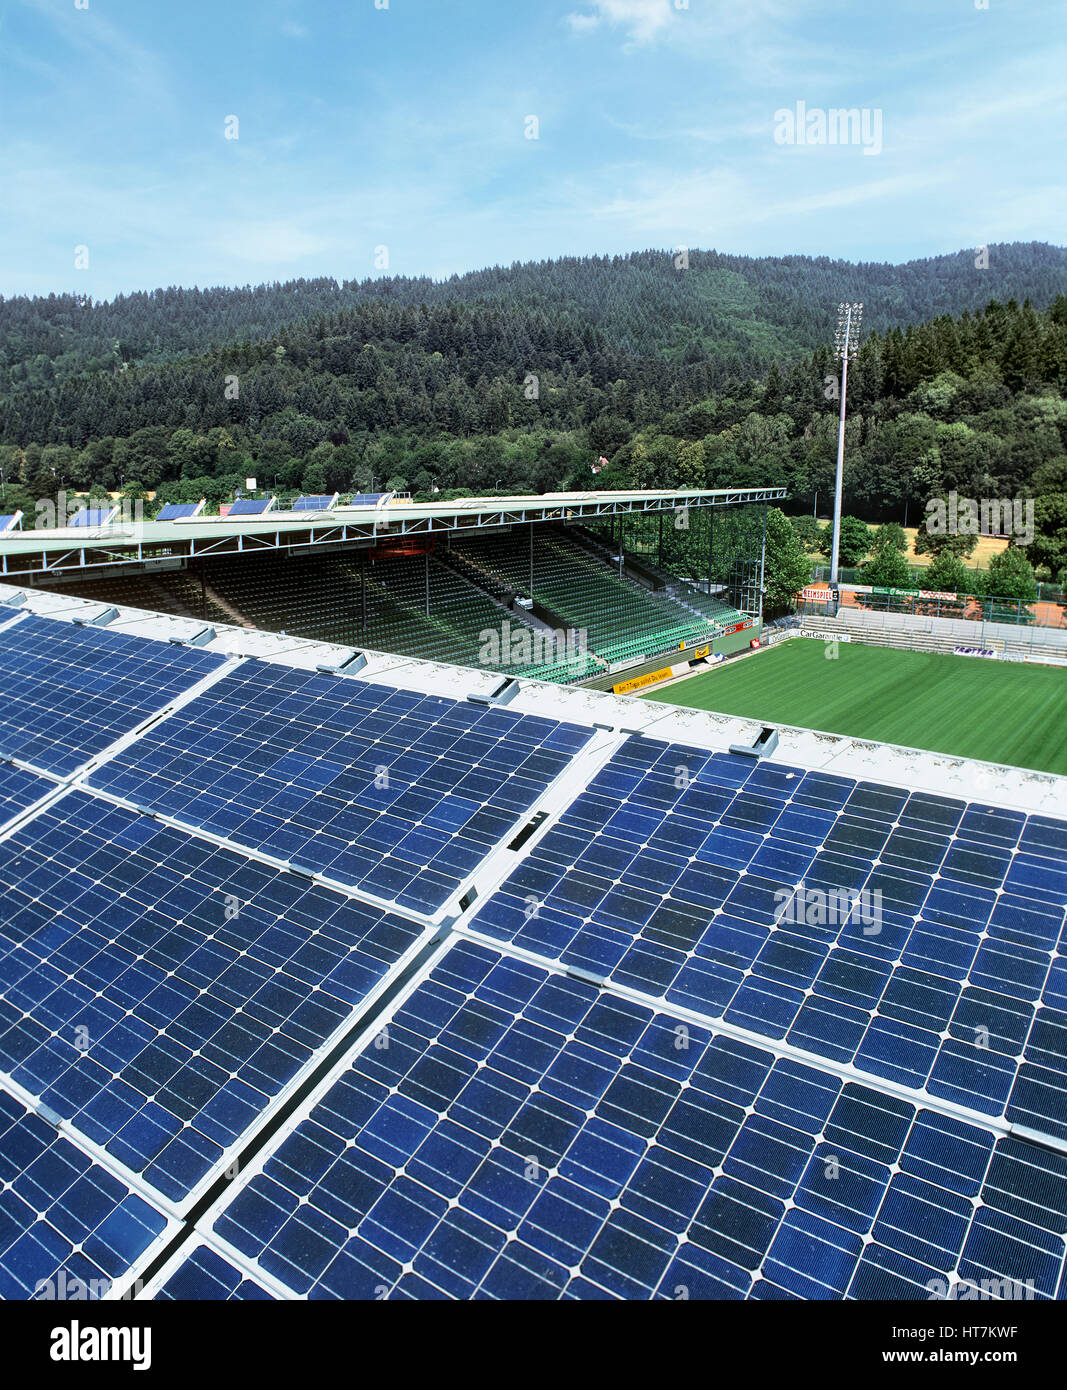 A 100 kW installazione di generazione di elettricità celle fotovoltaiche sul tetto del Dreisam stadio sportivo di Freiburg im Breisgau, Germania. Foto Stock